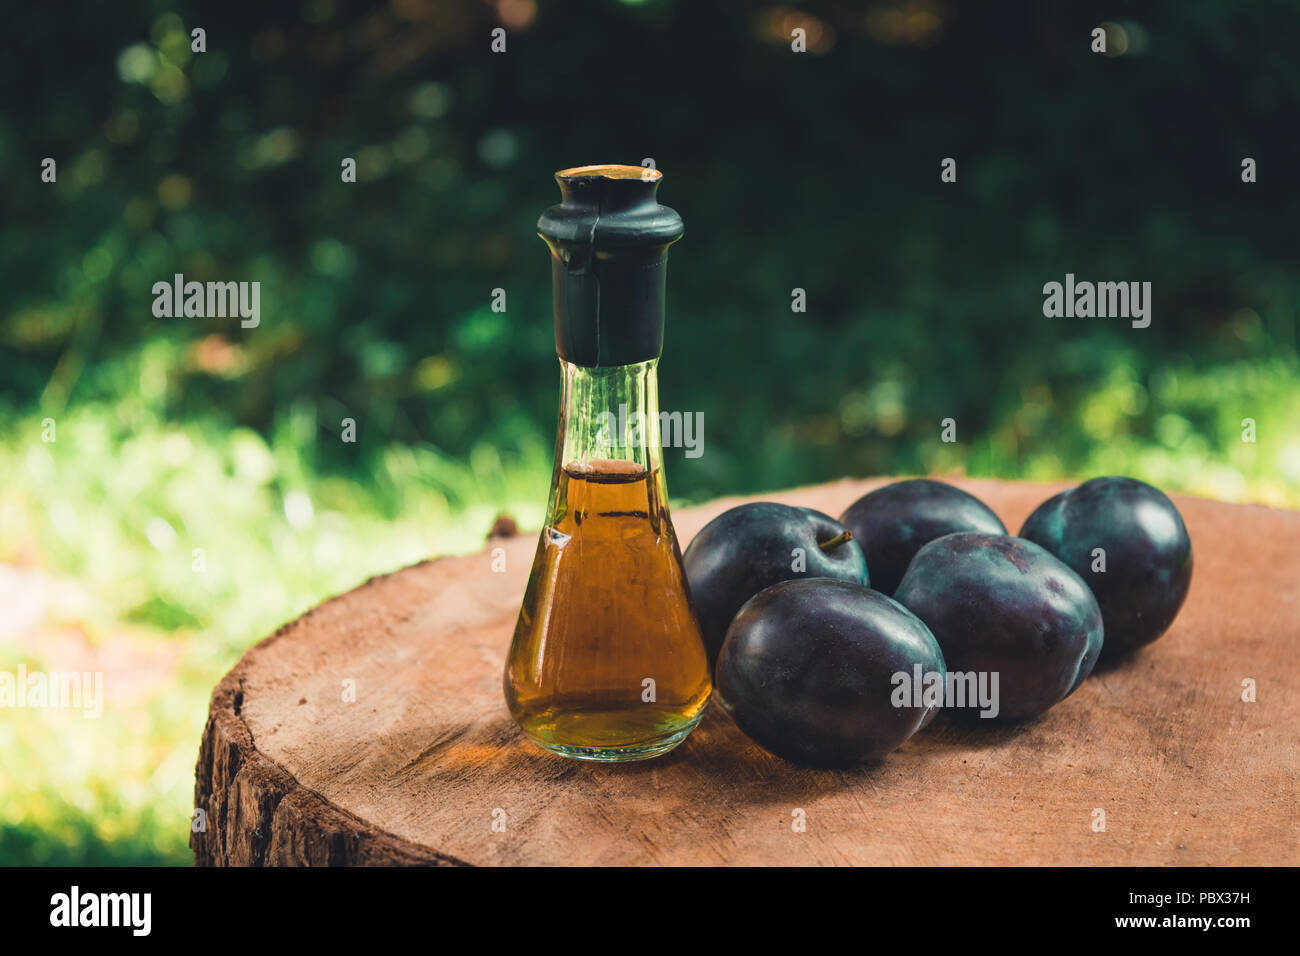 Eau-de-vie de prune (Slivovitz) en serbe traditionnel verre bouteille avec les prunes mûres fraîches sur une surface en bois. Banque D'Images